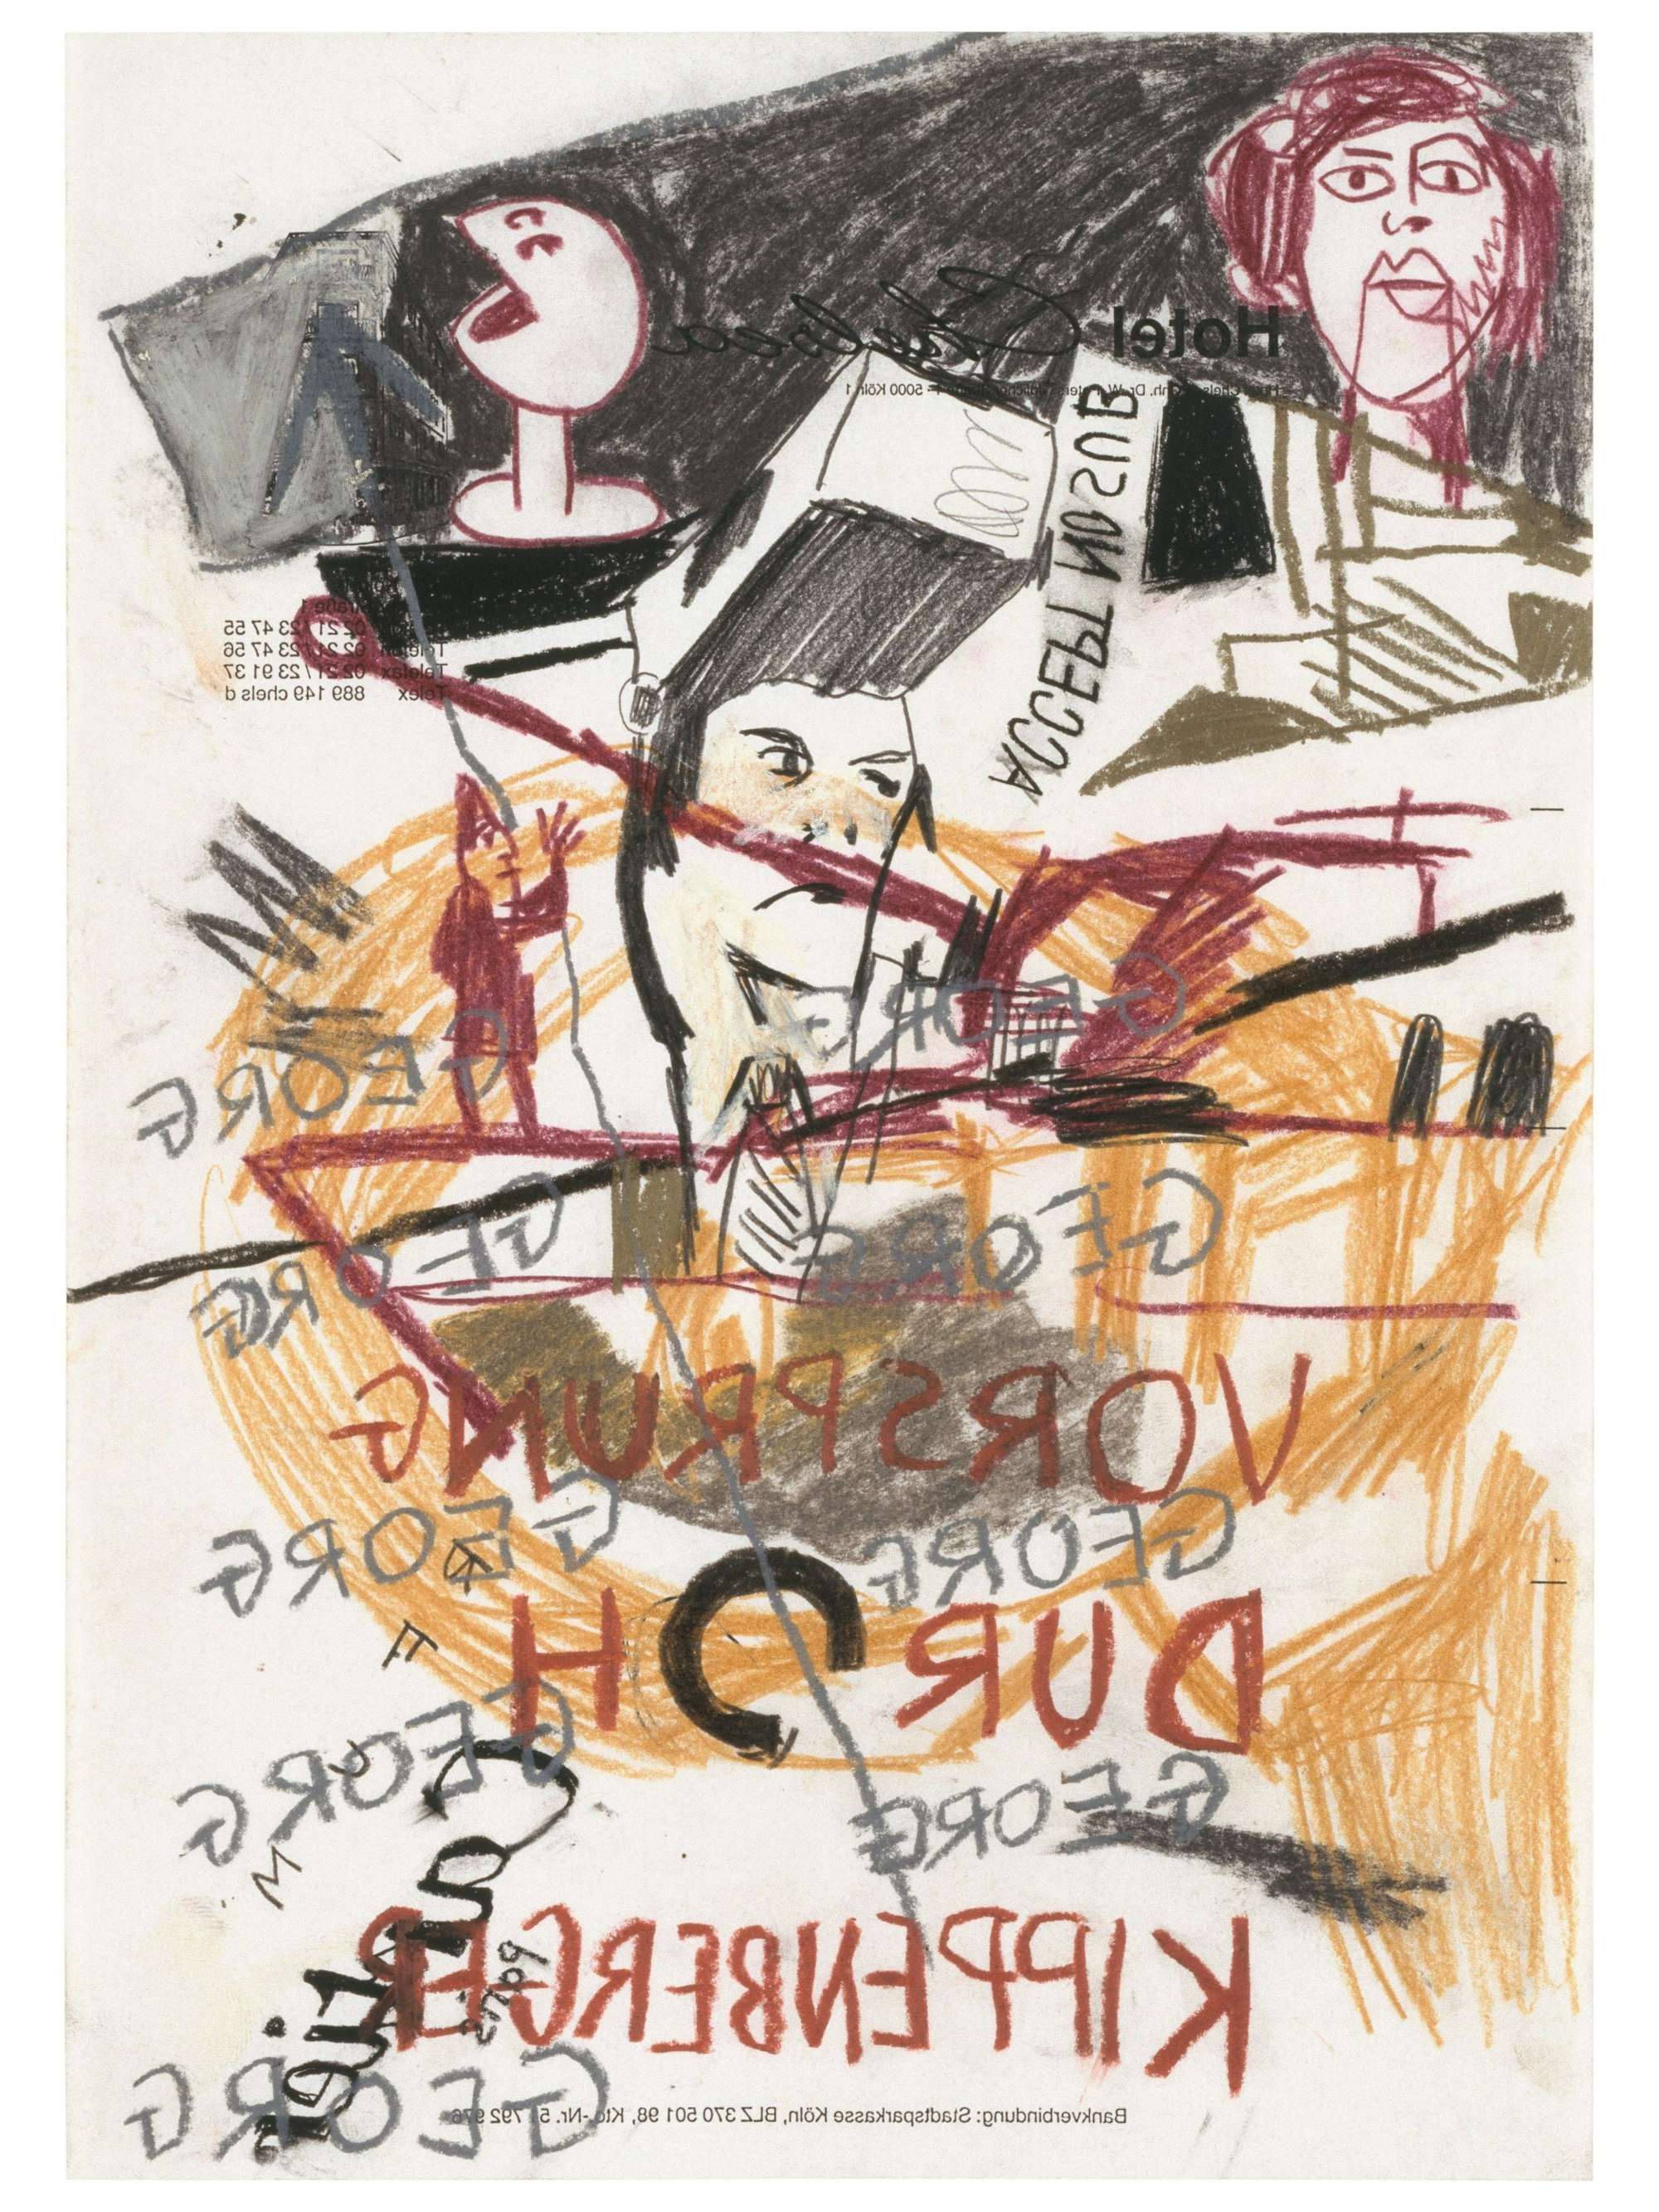 Martin Kippenbergers Heavy Mädel (Detail) zeigt eine Collage mit dem spiegelverkehrten Schriftzug Vorsprung durch Kippenberger